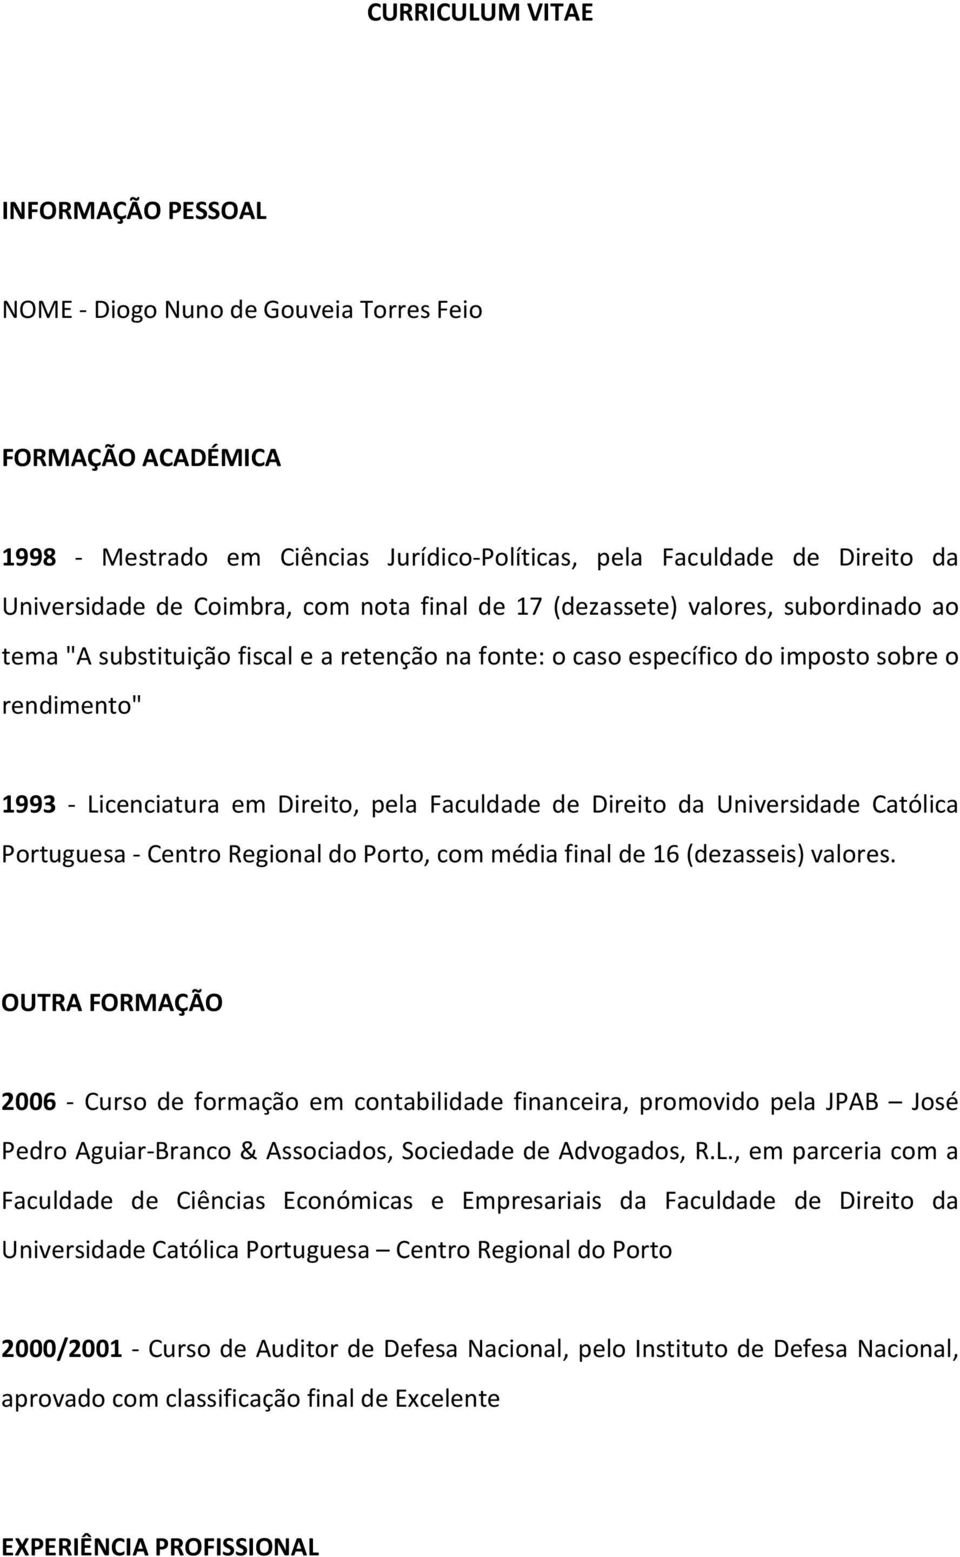 Curriculum Vitae Informacao Pessoal Nome Diogo Nuno De Gouveia Torres Feio Formacao Academica Pdf Free Download